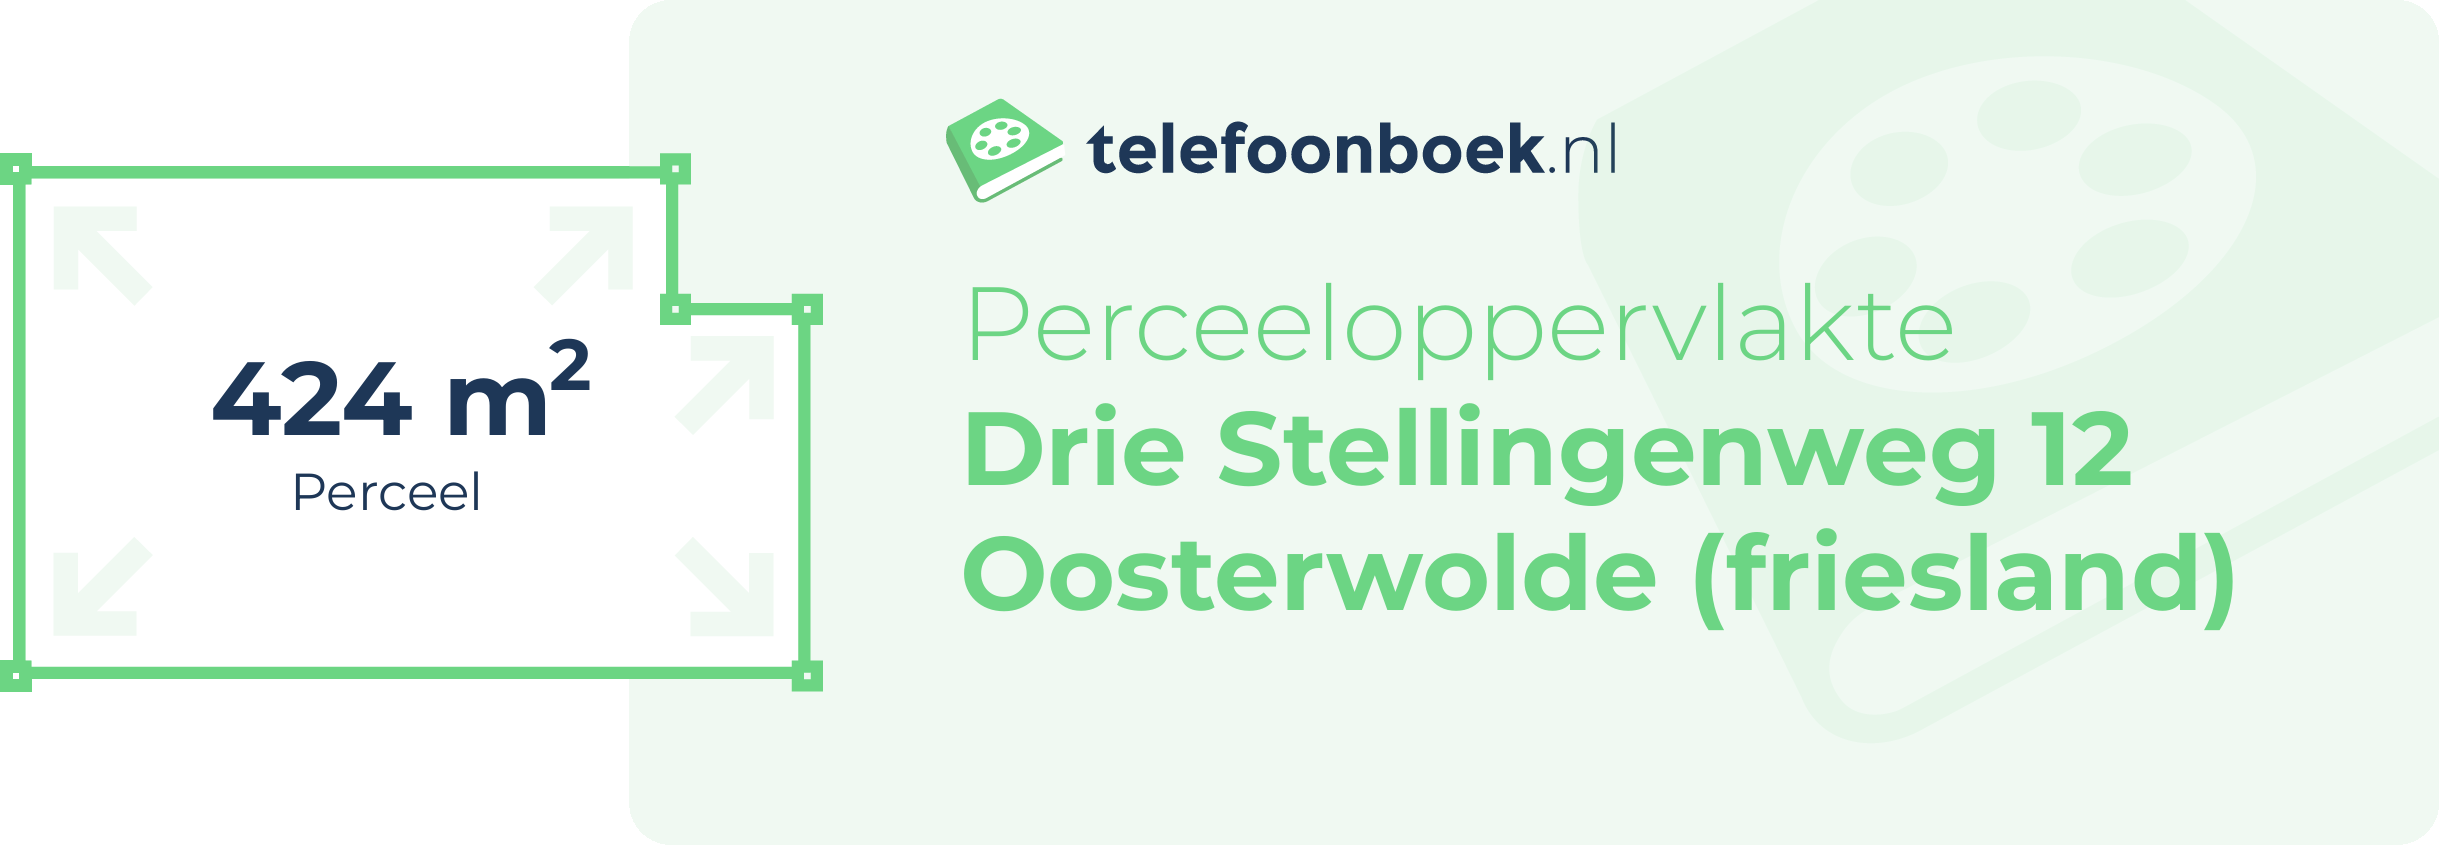 Perceeloppervlakte Drie Stellingenweg 12 Oosterwolde (Friesland)